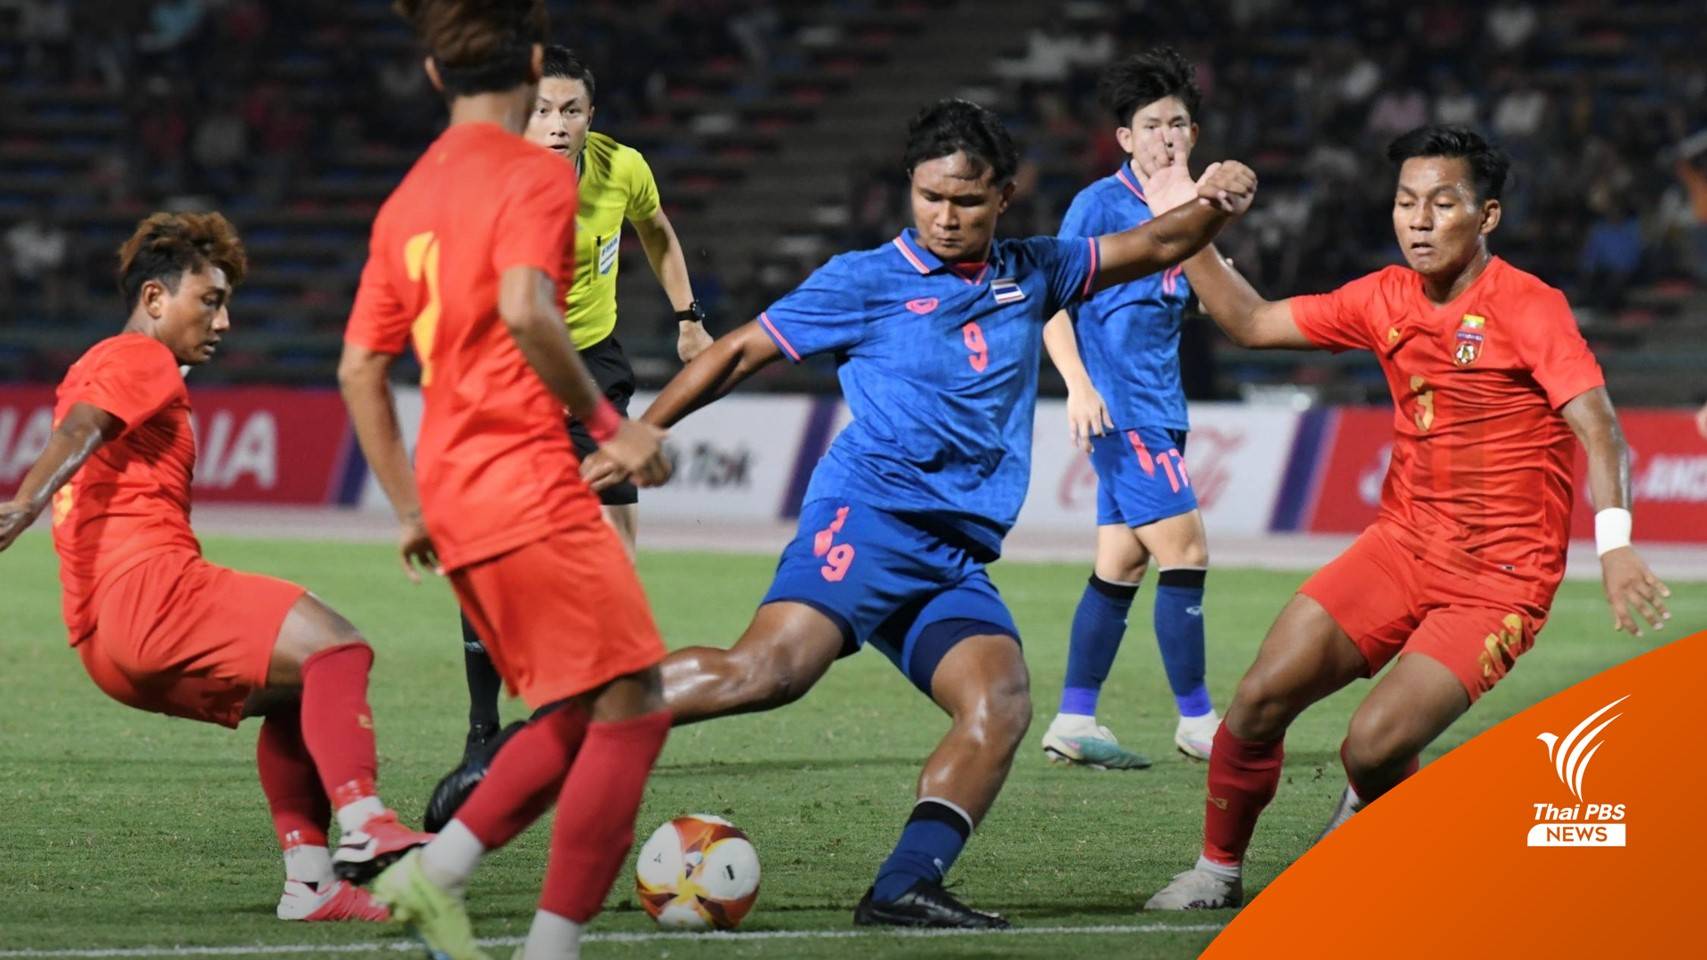 ฟุตบอลทีมชาติไทย ถล่ม เมียนมา 3-0 ลิ่วชิงทองกับอินโดฯ ซีเกมส์ 2023